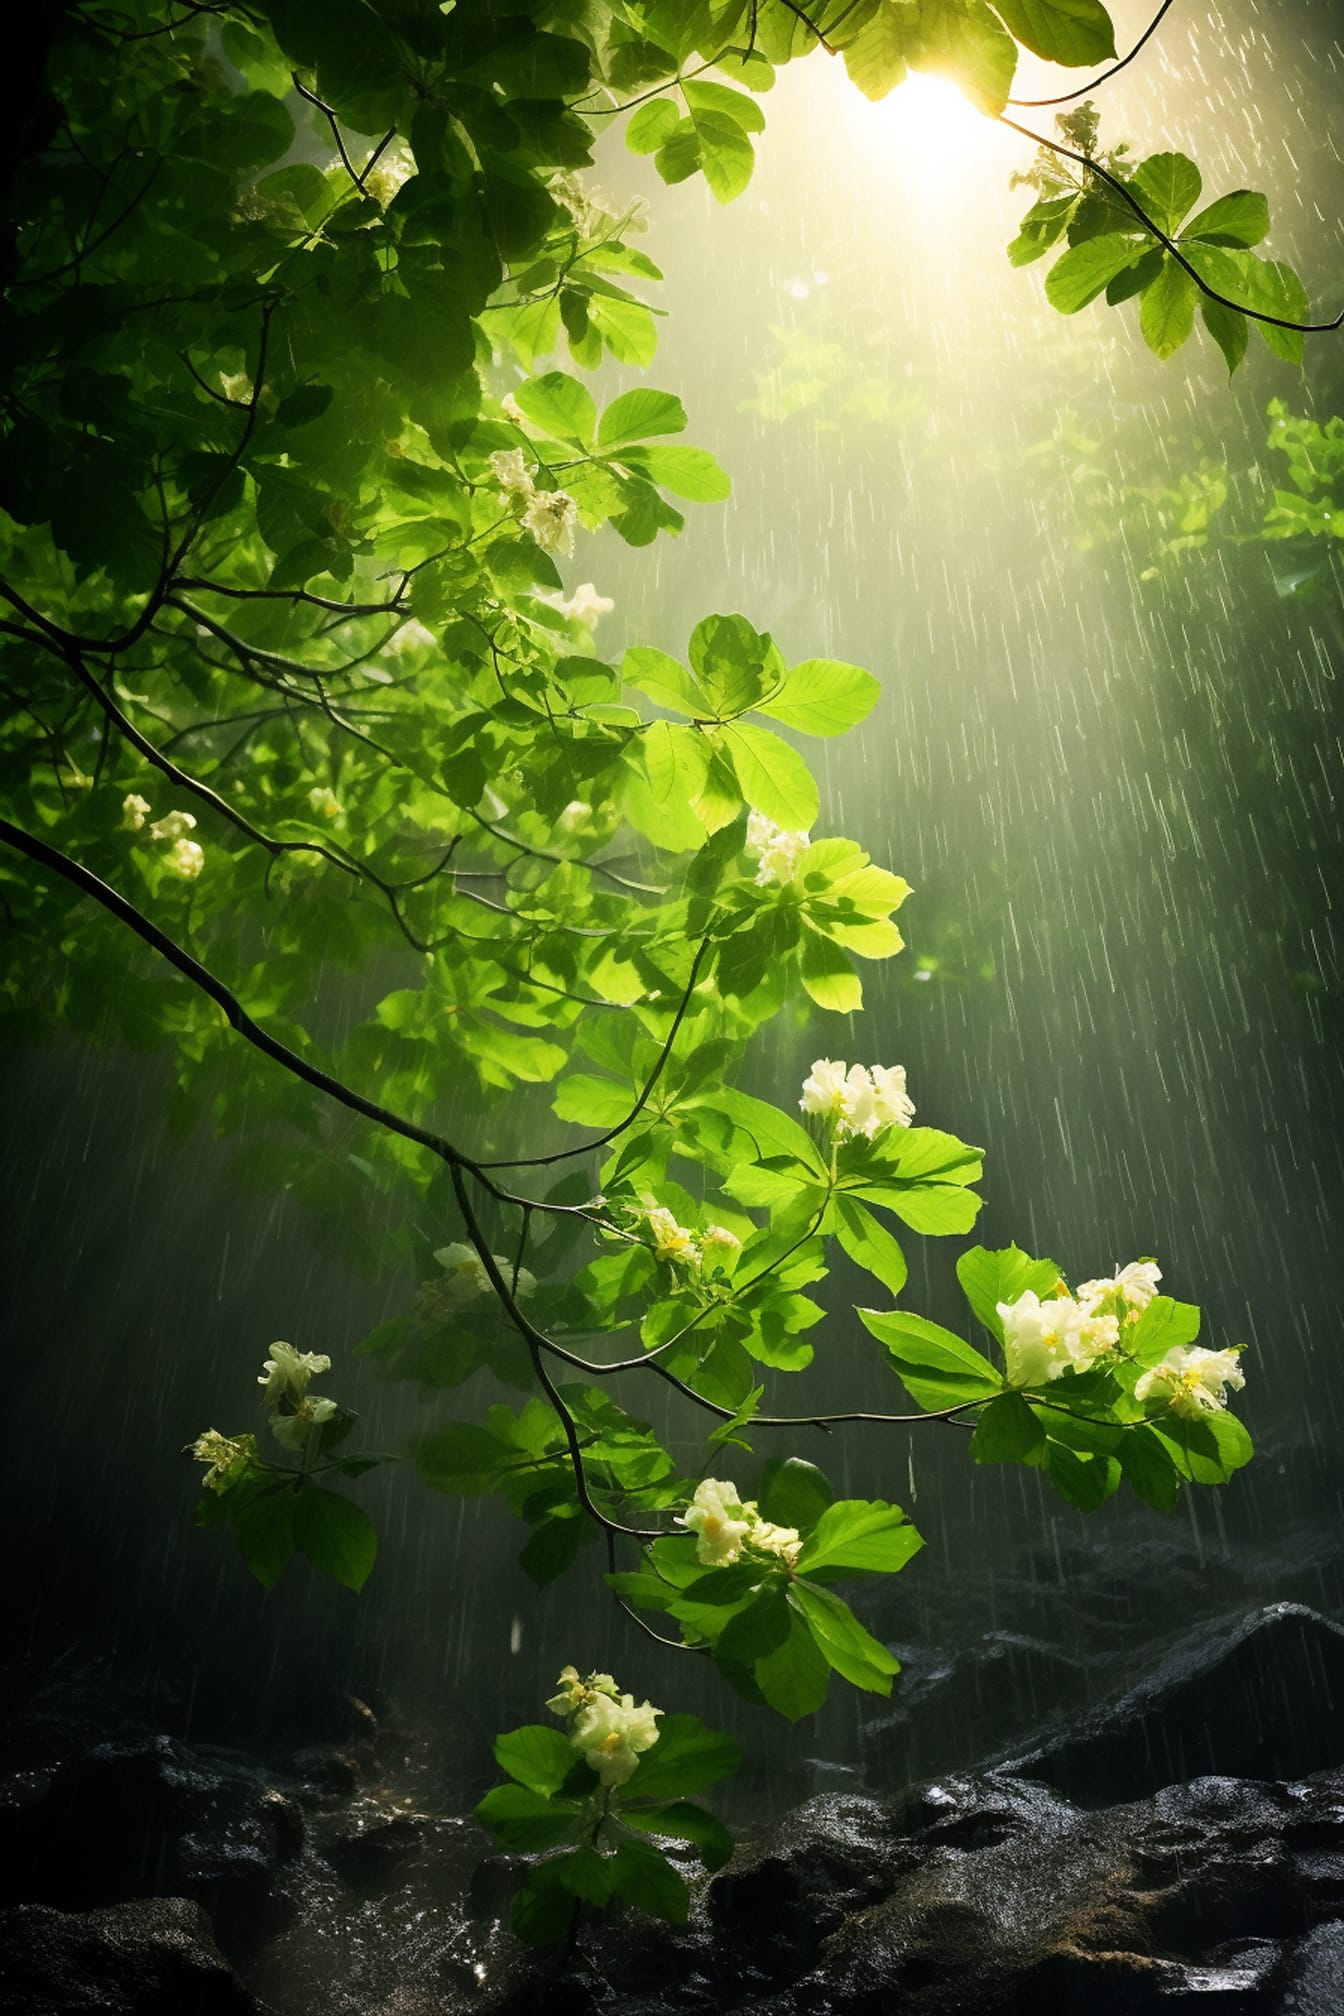 Światło słoneczne z deszczem na zielonkawożółtych liściach i gałęziach